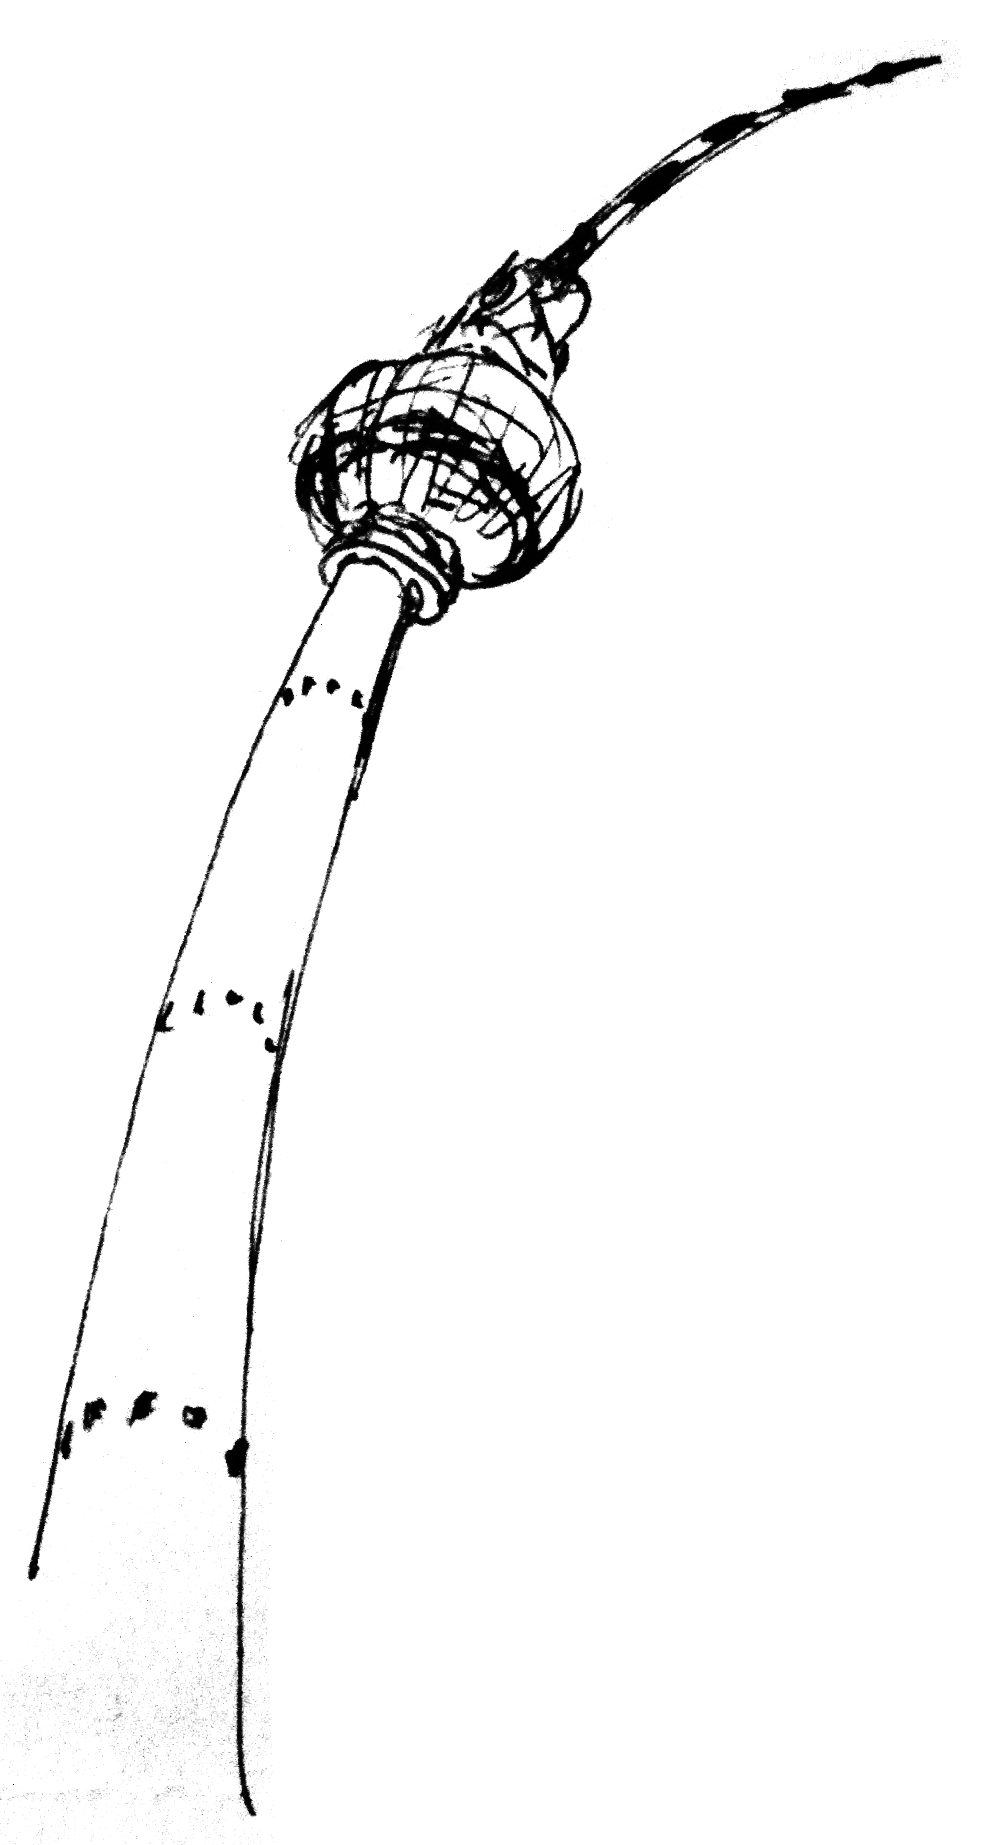 Zeichnung des Berliner Fernsehturms, der sich wie ein Baum im Wind biegt